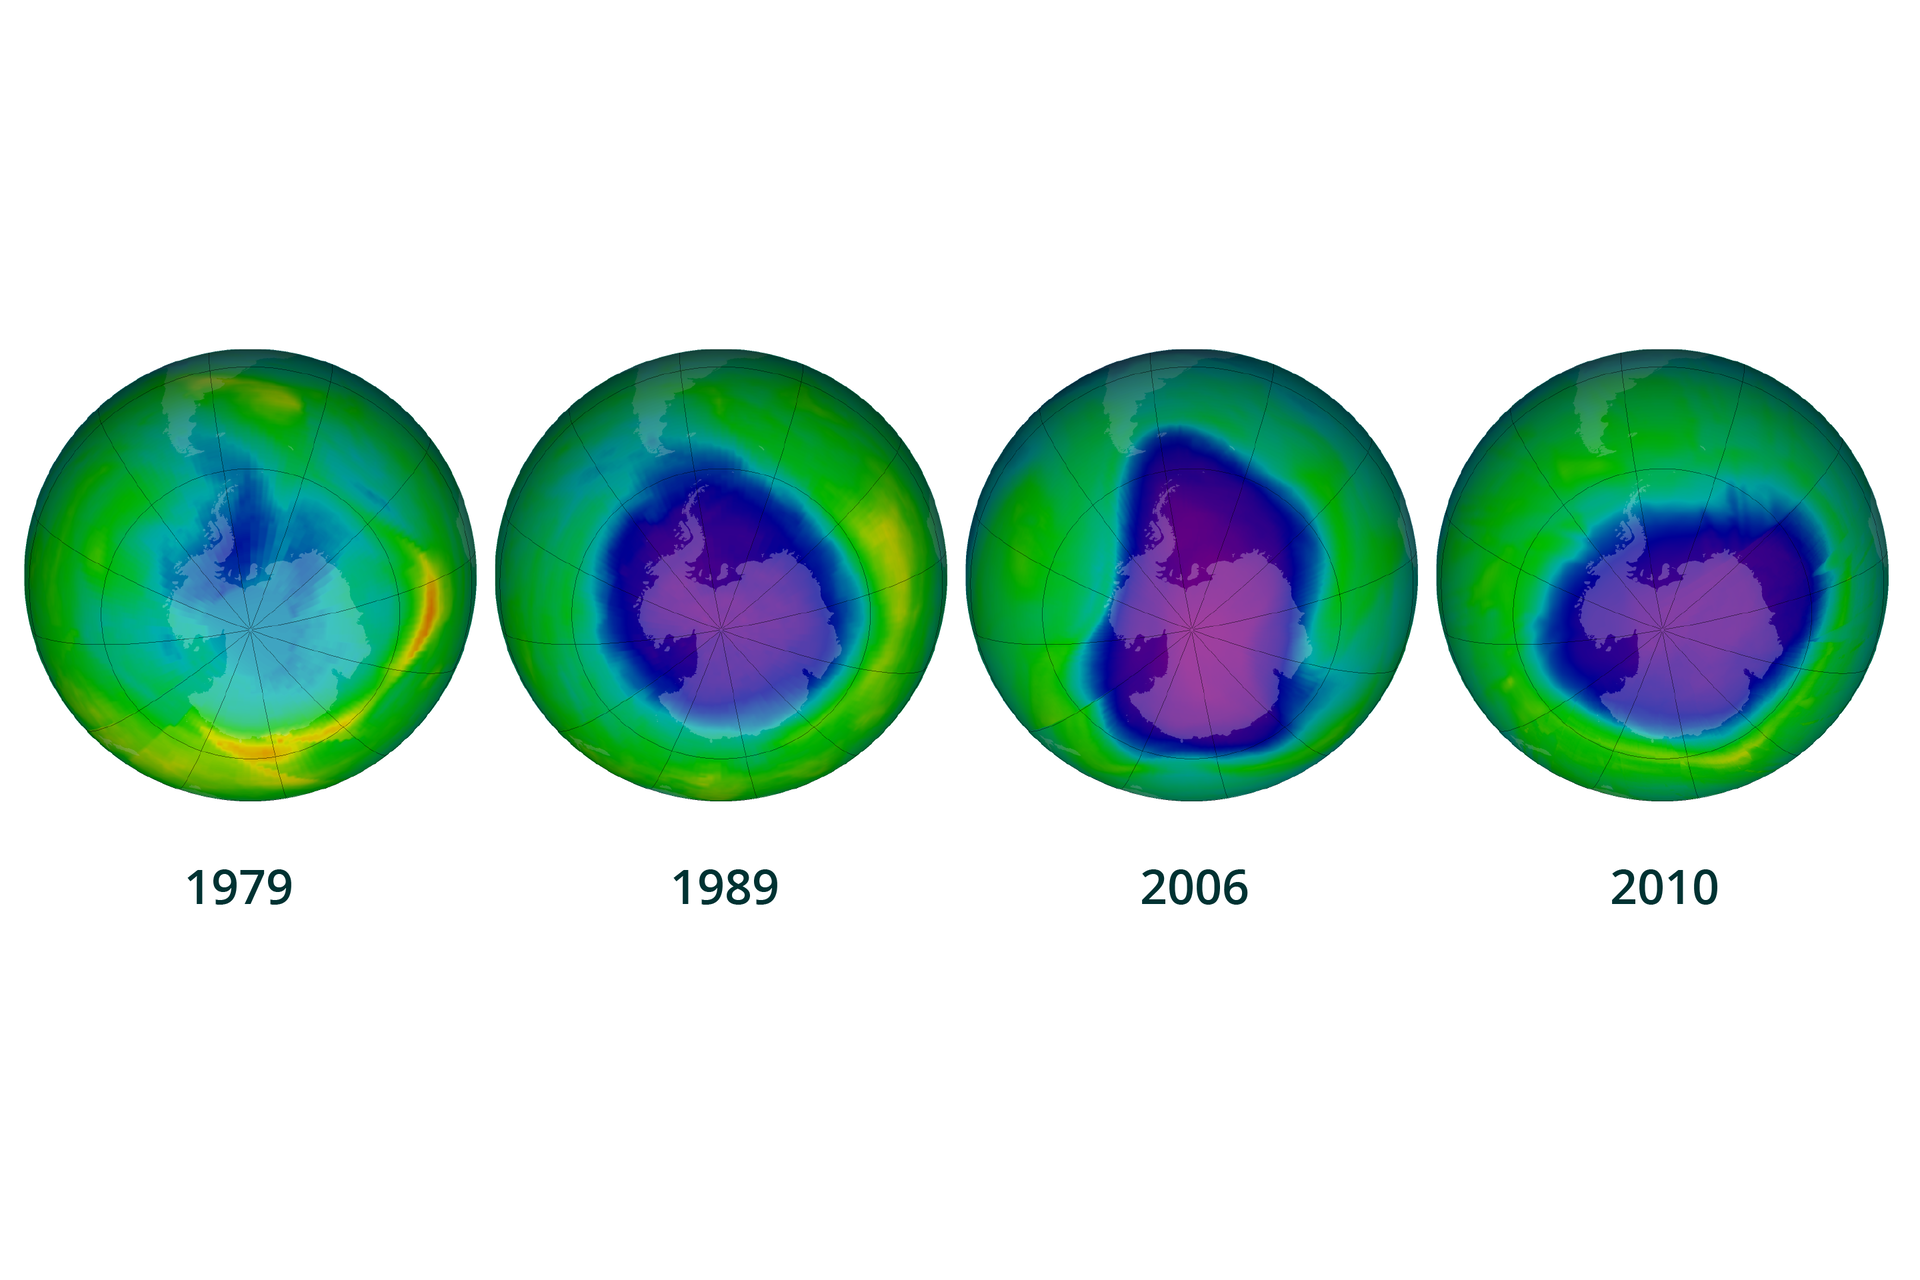 Grafika prezentuje proces powstawania i powiększania się dziury ozonowej nad Antarktyką w latach od 1979 do 2010. Składa się z czterech rysunków kuli ziemskiej z naniesionym na nią wykresem barwnym, w którym niebiesko fioletowa plama oznacza dziurę ozonową. Rok 1979, dziura ozonowa bardzo mała i obejmuje niewielki wycinek na styku Antarktydy i Ameryki Południowej. Rok 1989 dziura obejmuje prawie cały kontynent Antarktydę. Rok 2006, dziura rozszerza się na sporą część oceanu Południowego. Rok 2010, niewielkie zmniejszenie dziury i wycofanie z obszaru granicznego z Ameryką Południową, ale rozciągnięcie w kierunku Afryki.